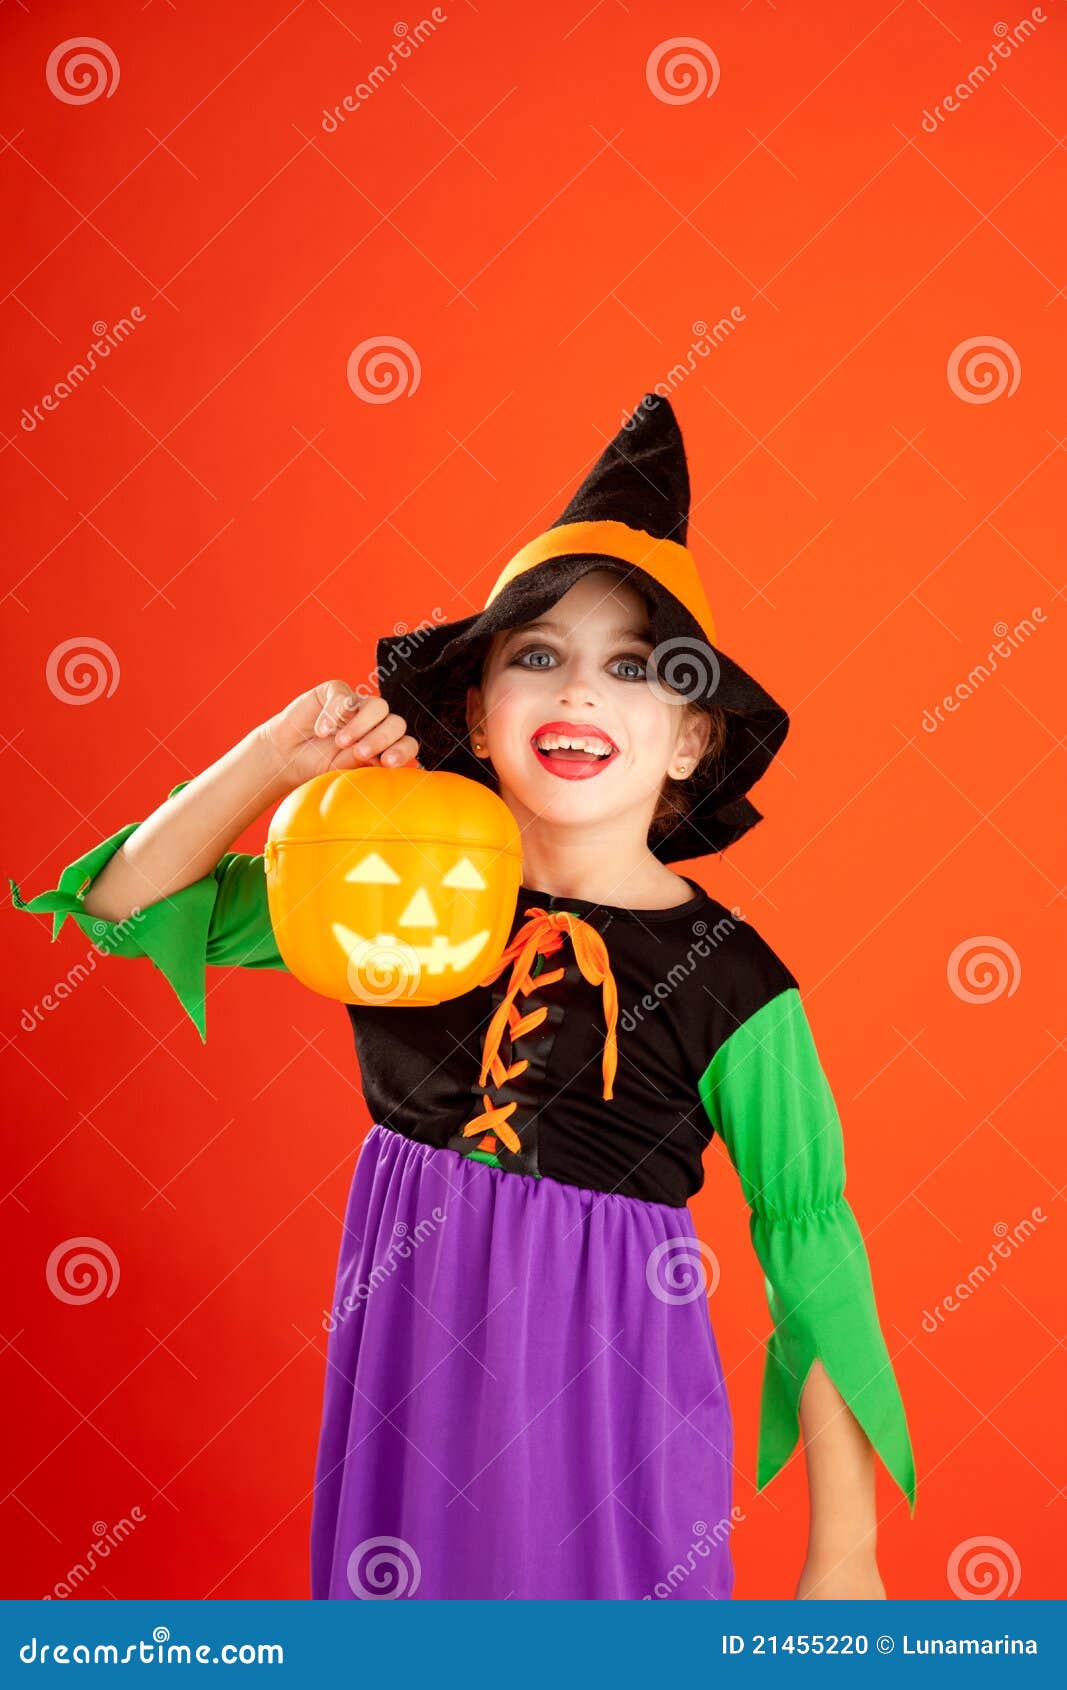 Halloween Kid Girl Costume on Orange Stock Photo - Image of childhood ...